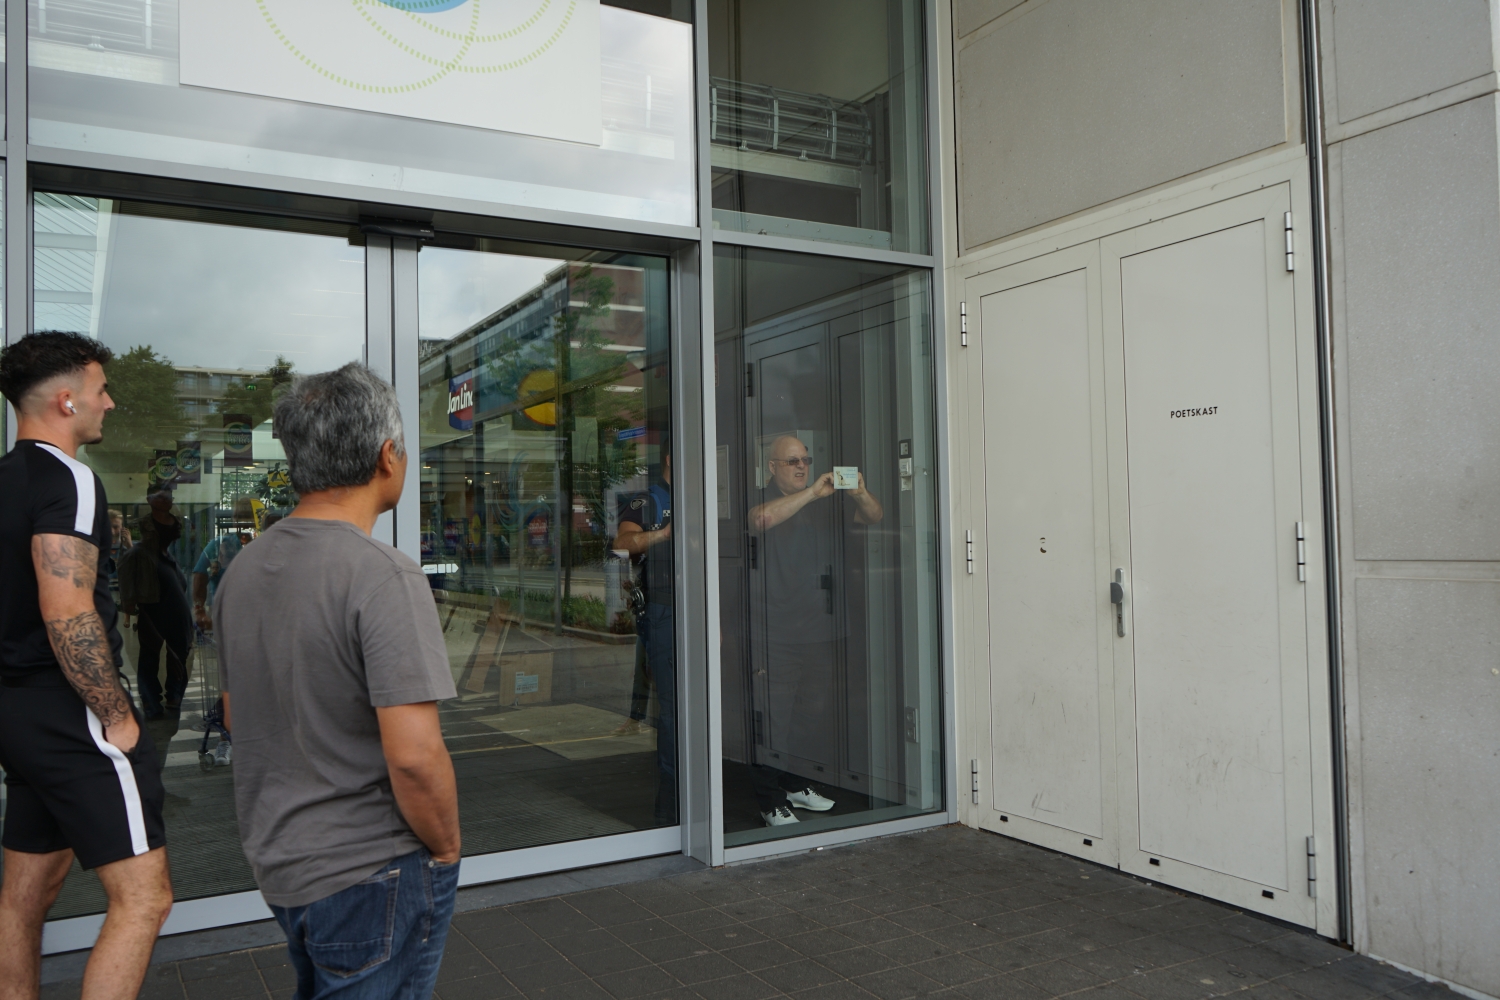 De wijkboa plakt een sticker op de deur van het winkelcentrum